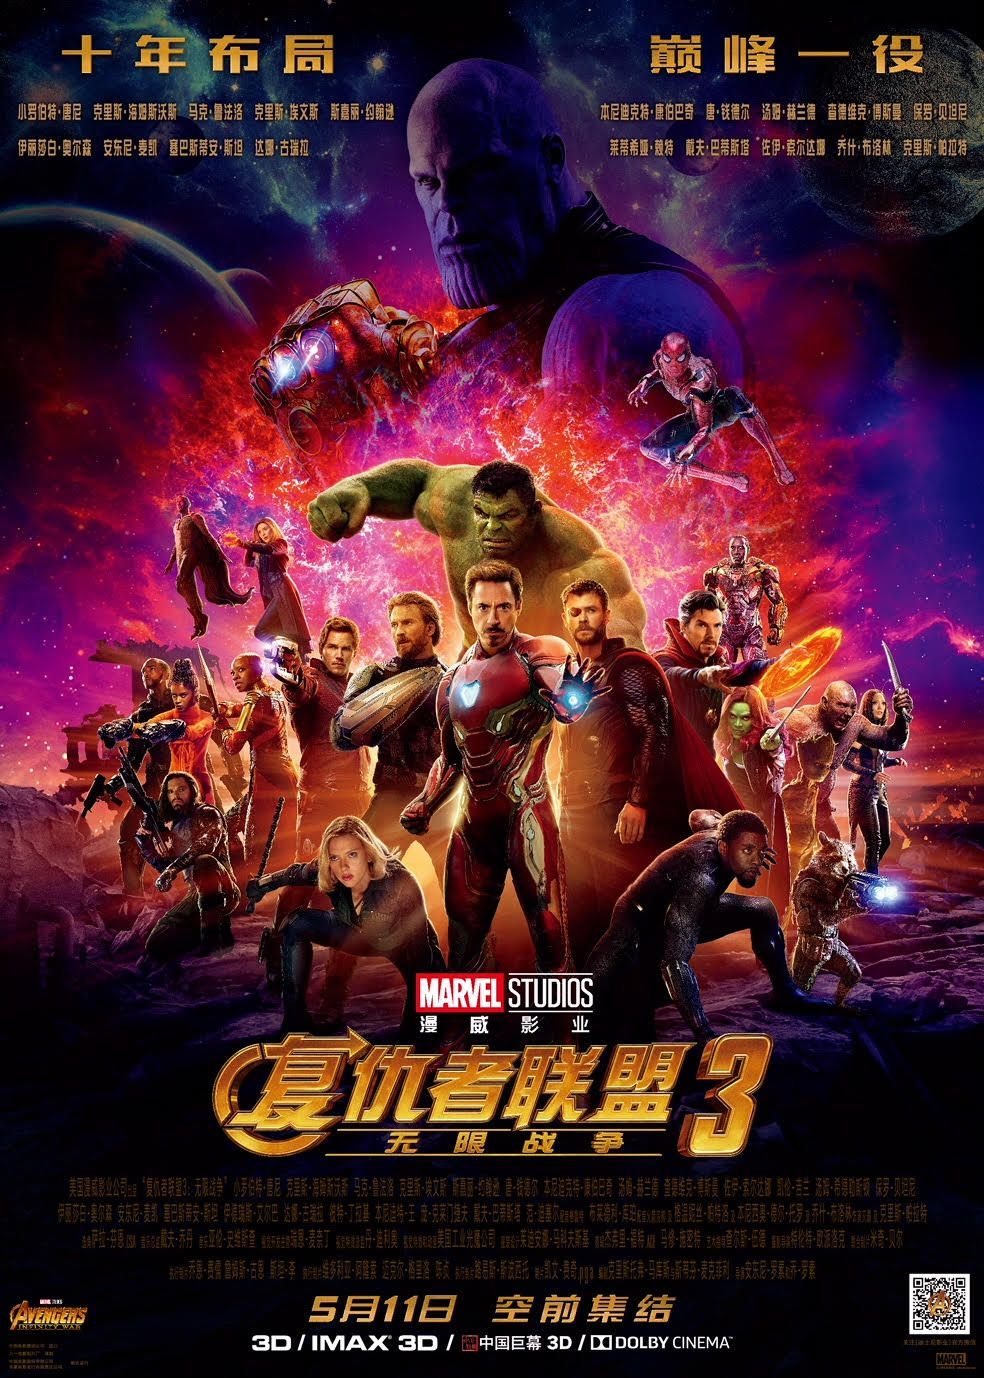 Bosszúállók: Az Infinity War megkapja Kína megjelenési dátumát és egy új posztert